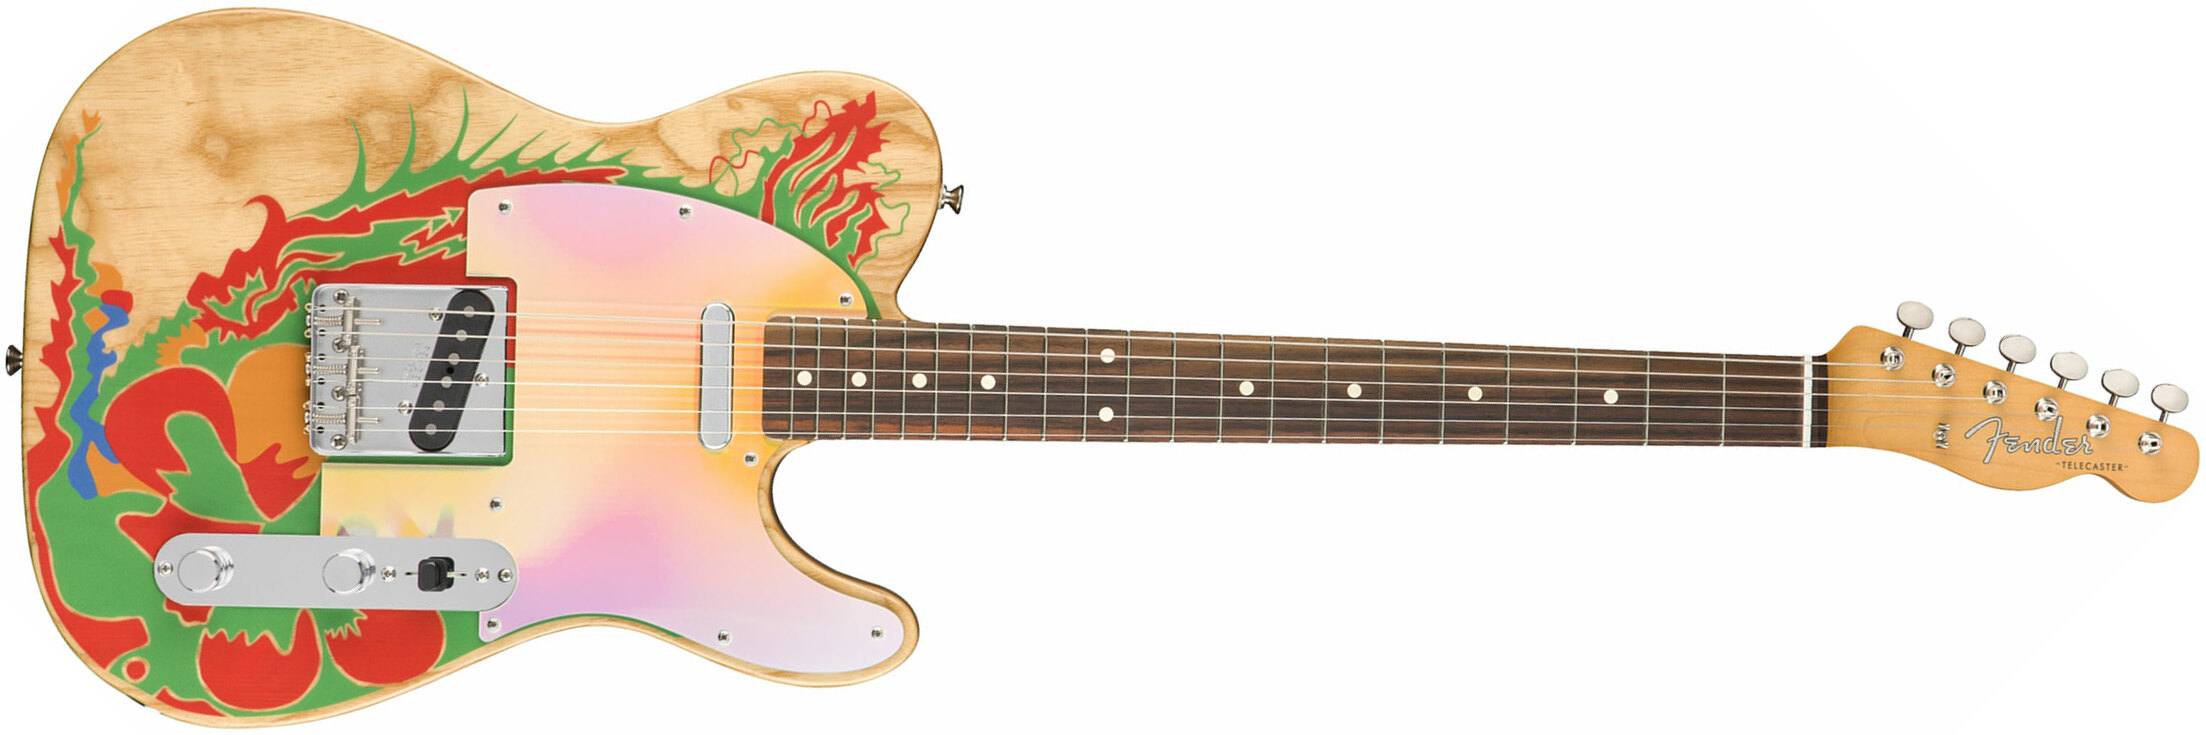 Fender Jimmy Page Tele Dragon Ltd Mex Signature Rw - Natural - Guitare Électrique Forme Tel - Main picture